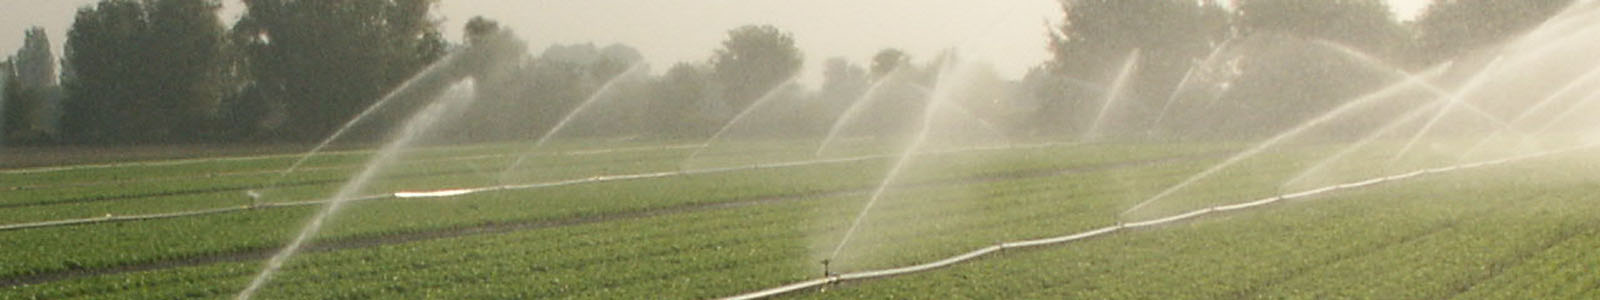 Bewässerung im Gemüsefeld ©DLR